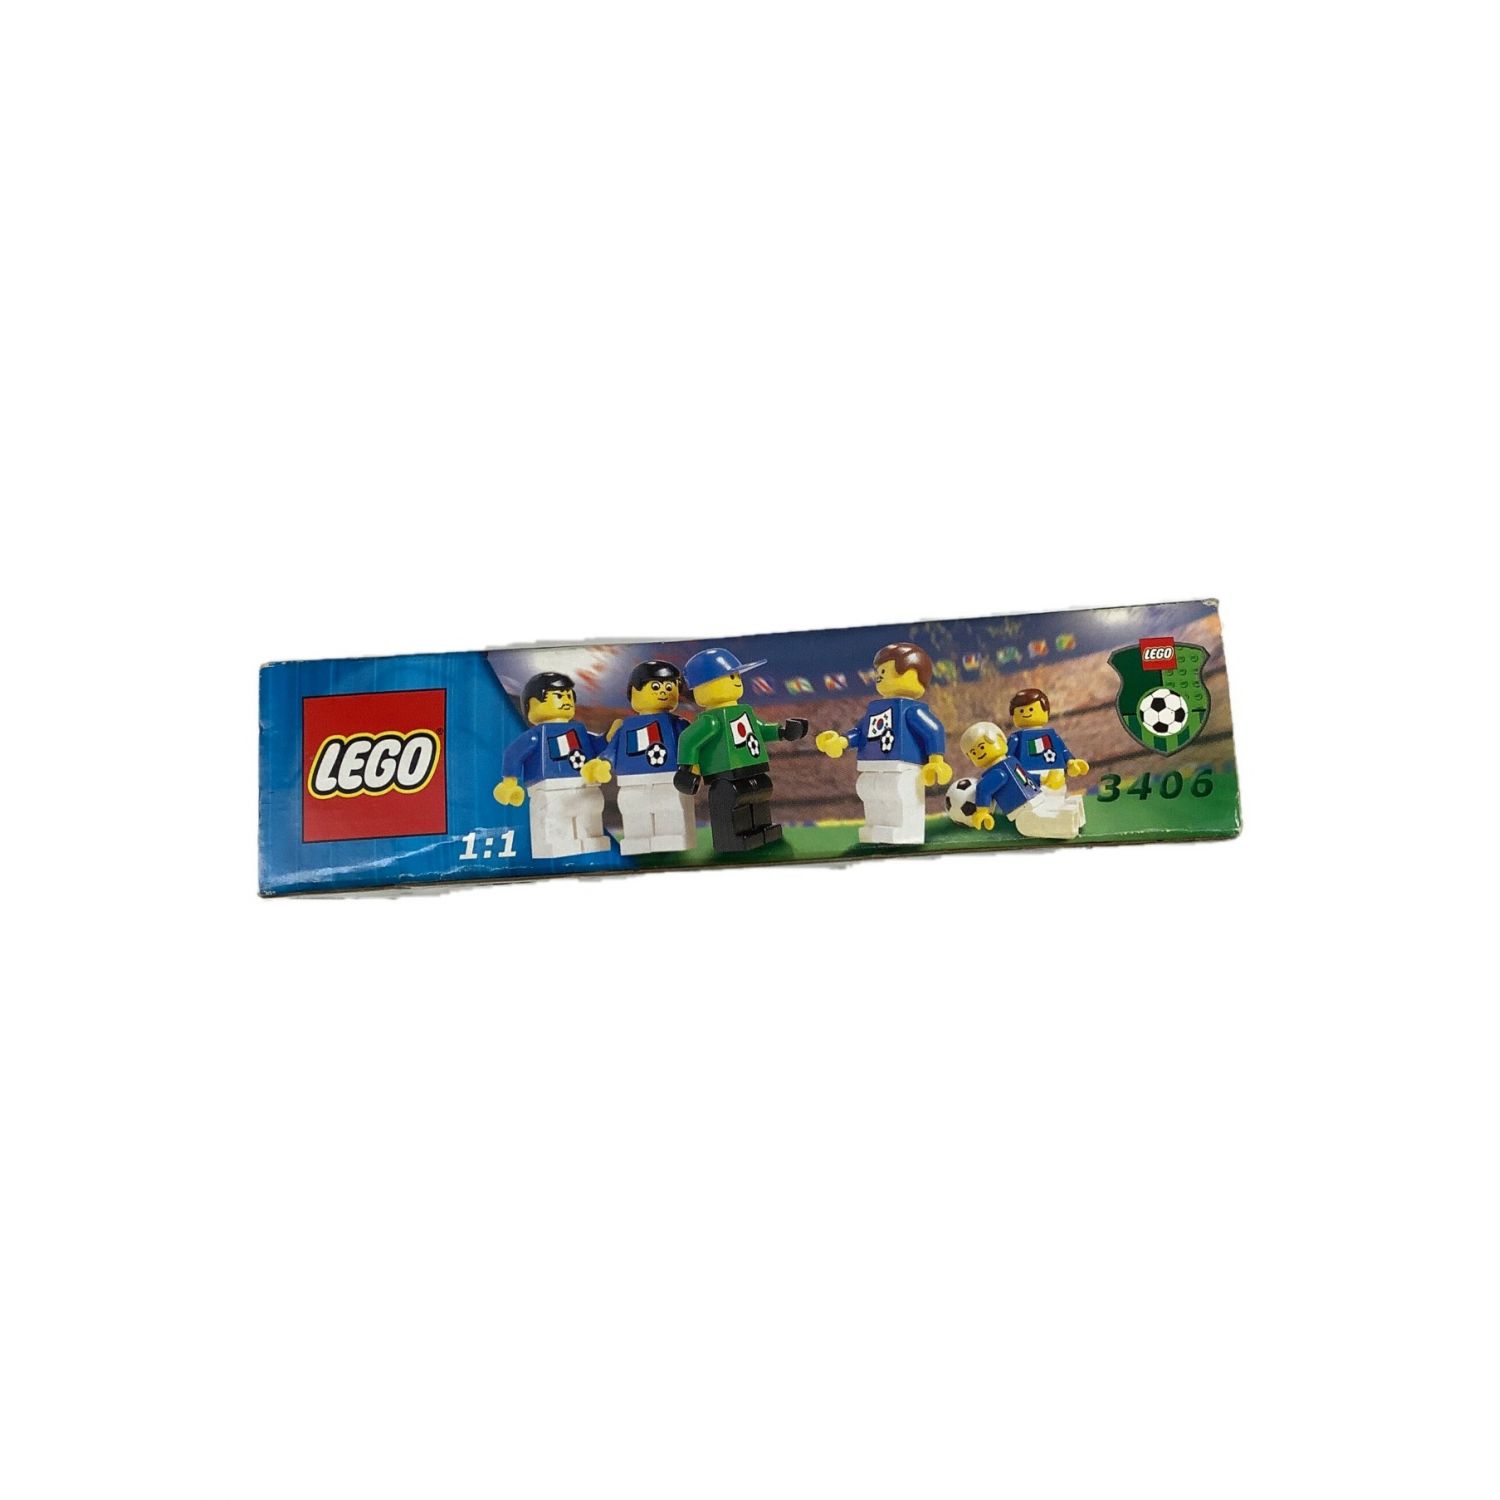 LEGO (レゴ) レゴブロック 並行輸入品 個包装未開封 【現状販売品 ...